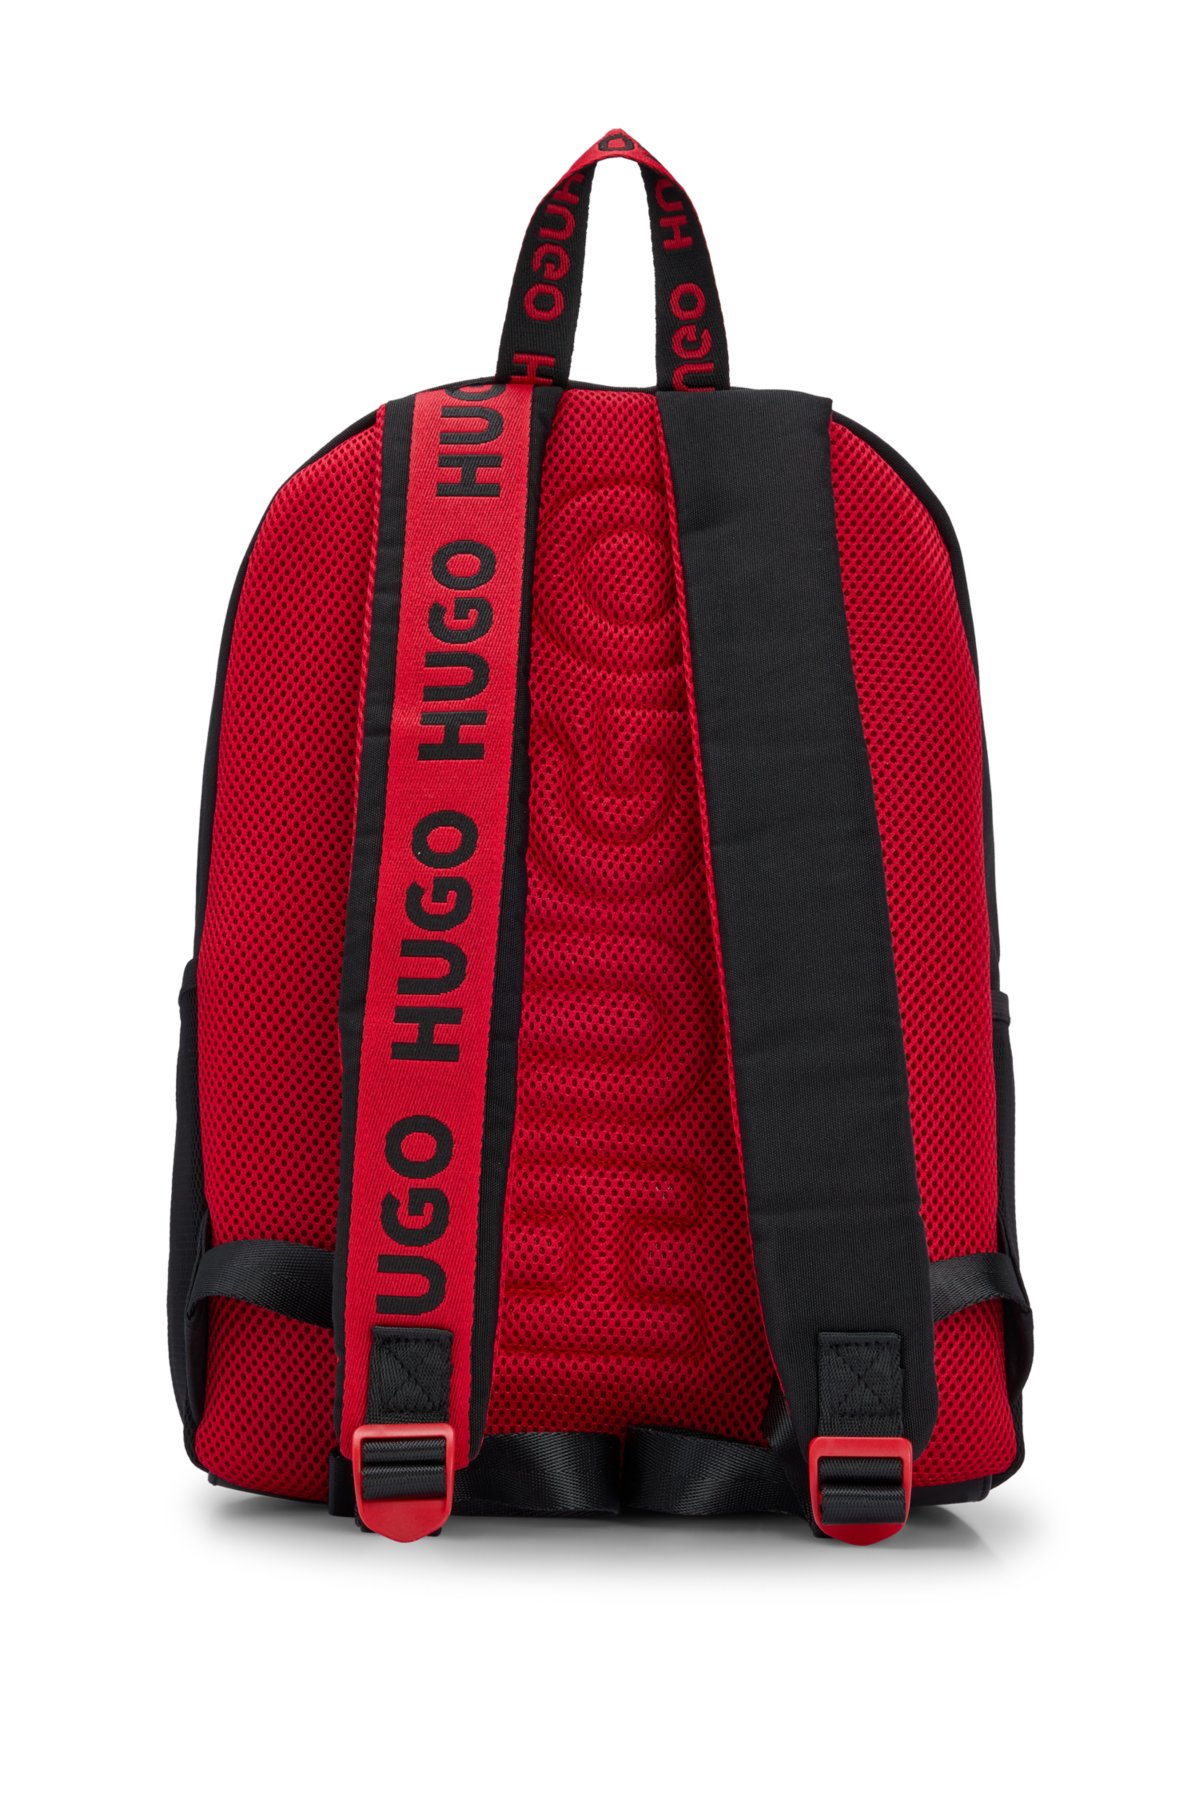 Kids' canvas backpack with logo details, Black